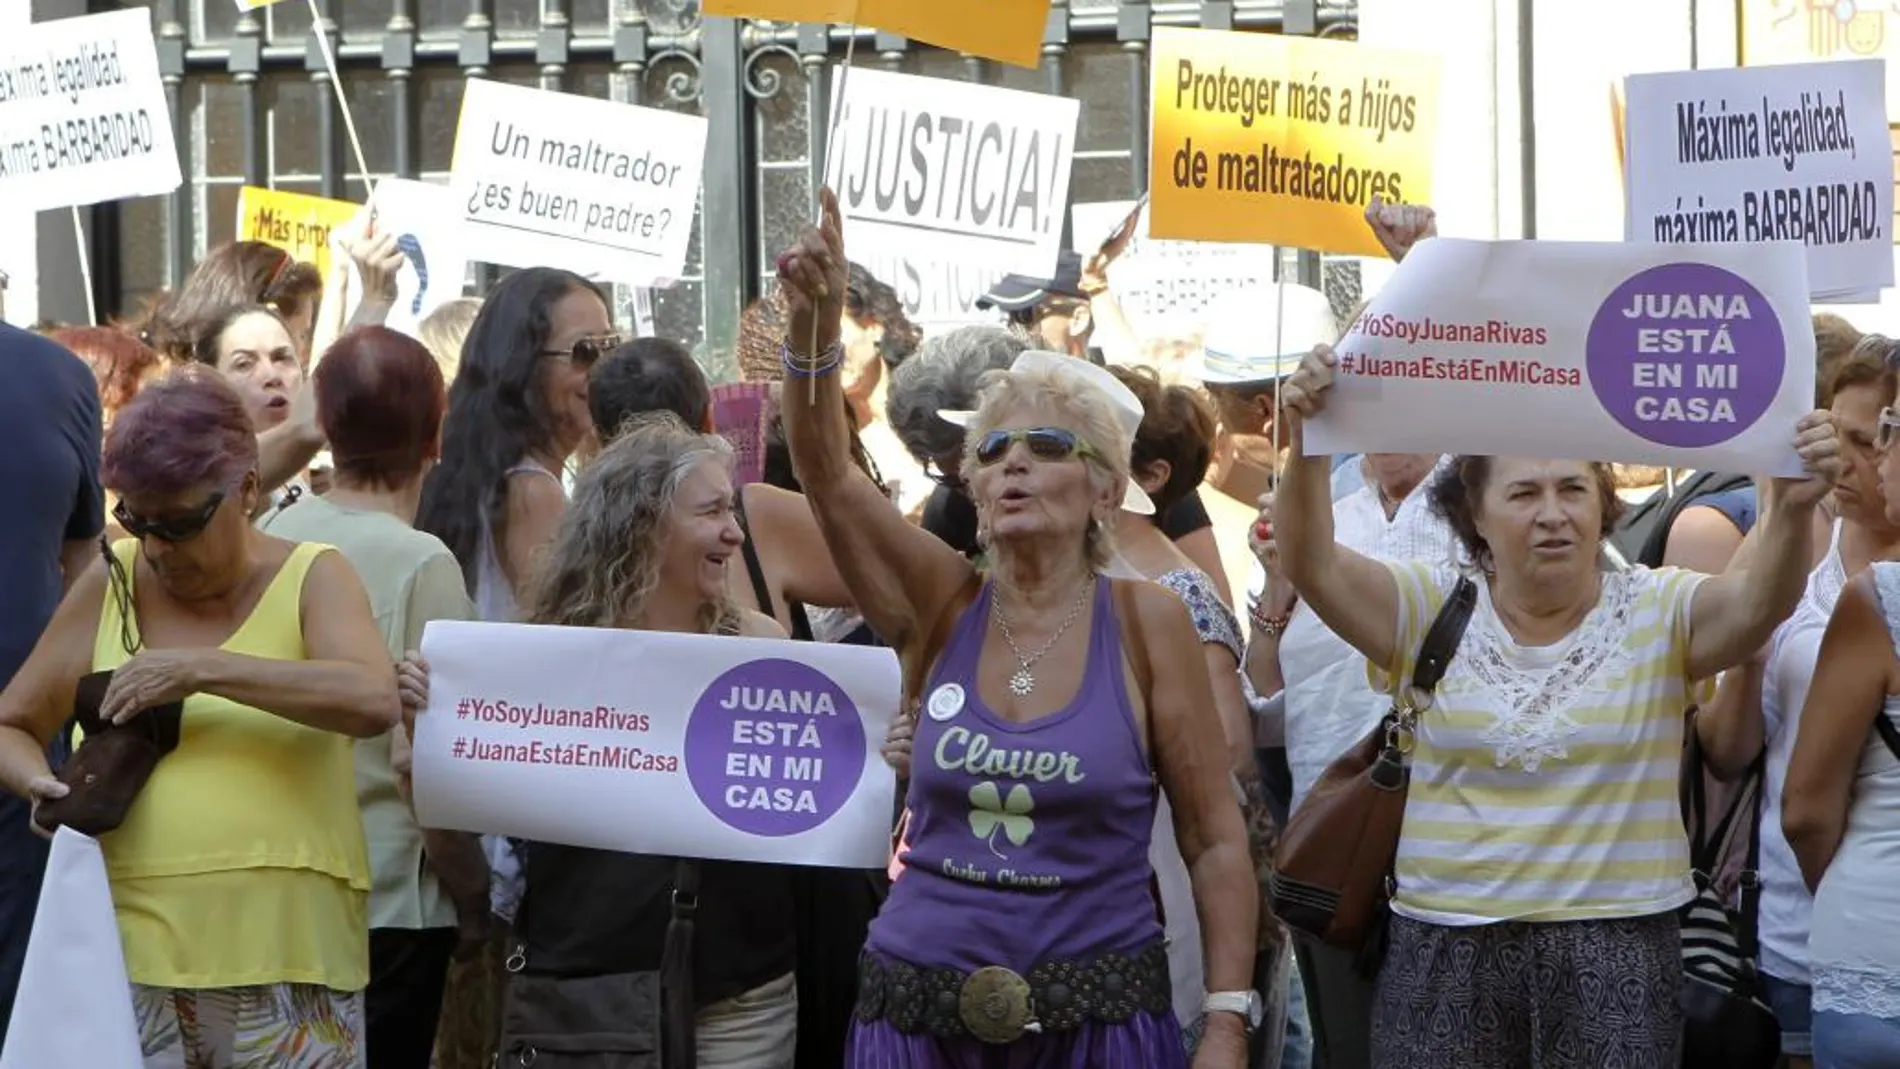 Plataformas en apoyo a Juana Rivas, en busca y captura por no entregar a sus hijos al padre, protestan esta mañana frente al Ministerio de Justicia en Madrid, y en otras ciudades del país, para asegurar la protección de sus hijos